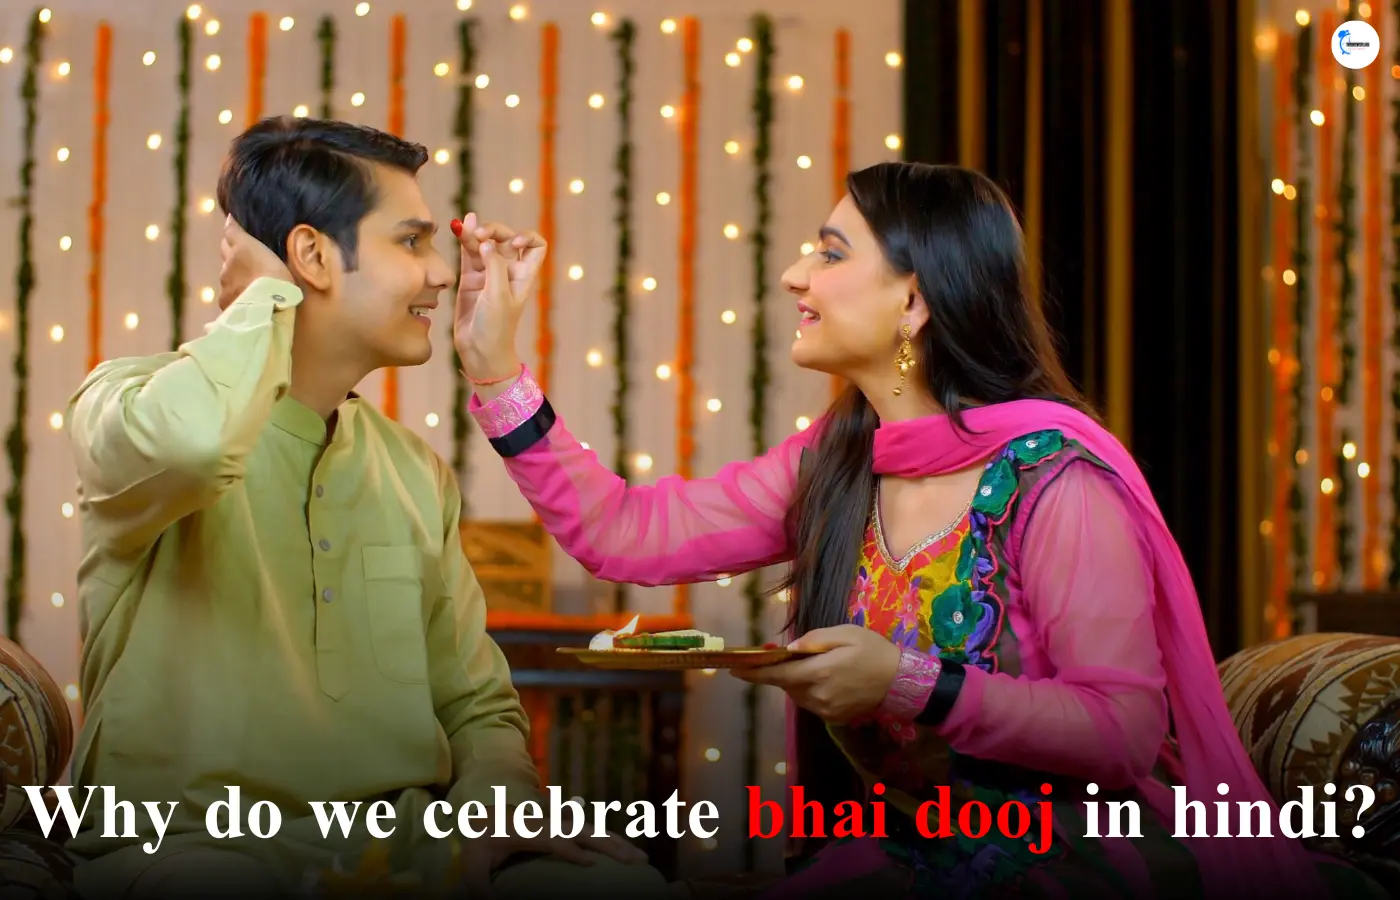 Why do we celebrate bhai dooj in hindi?